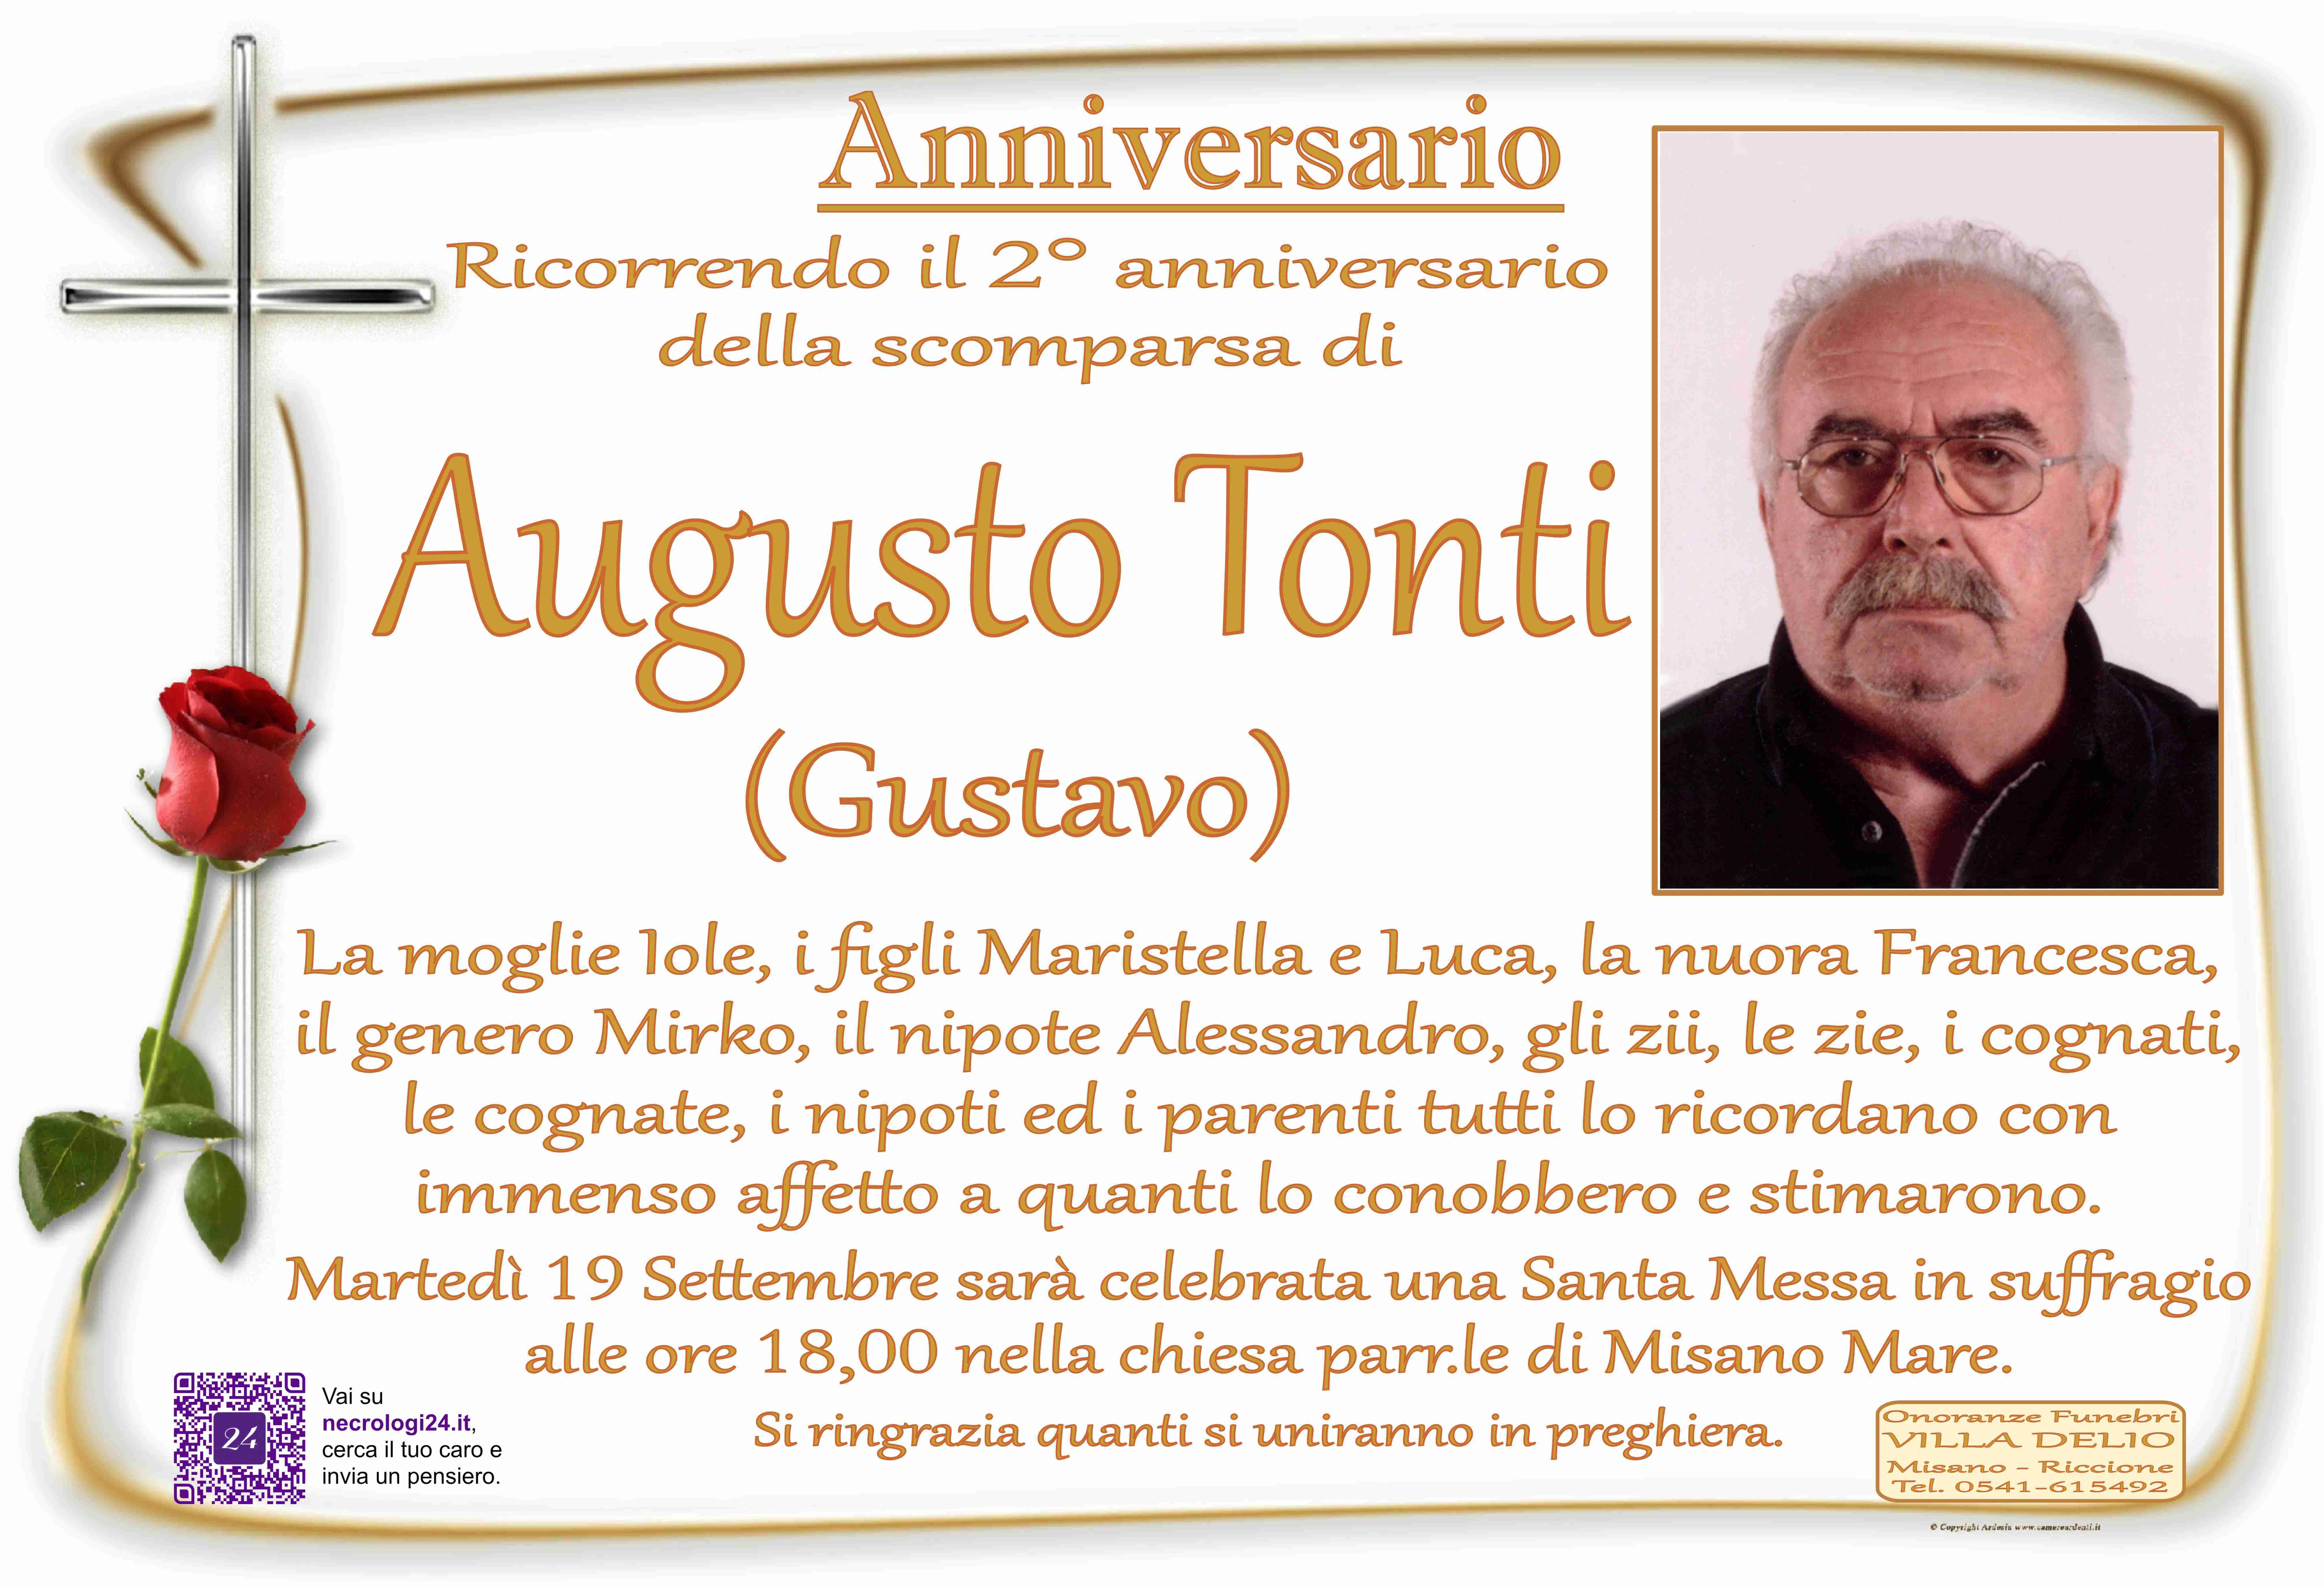 Augusto Tonti